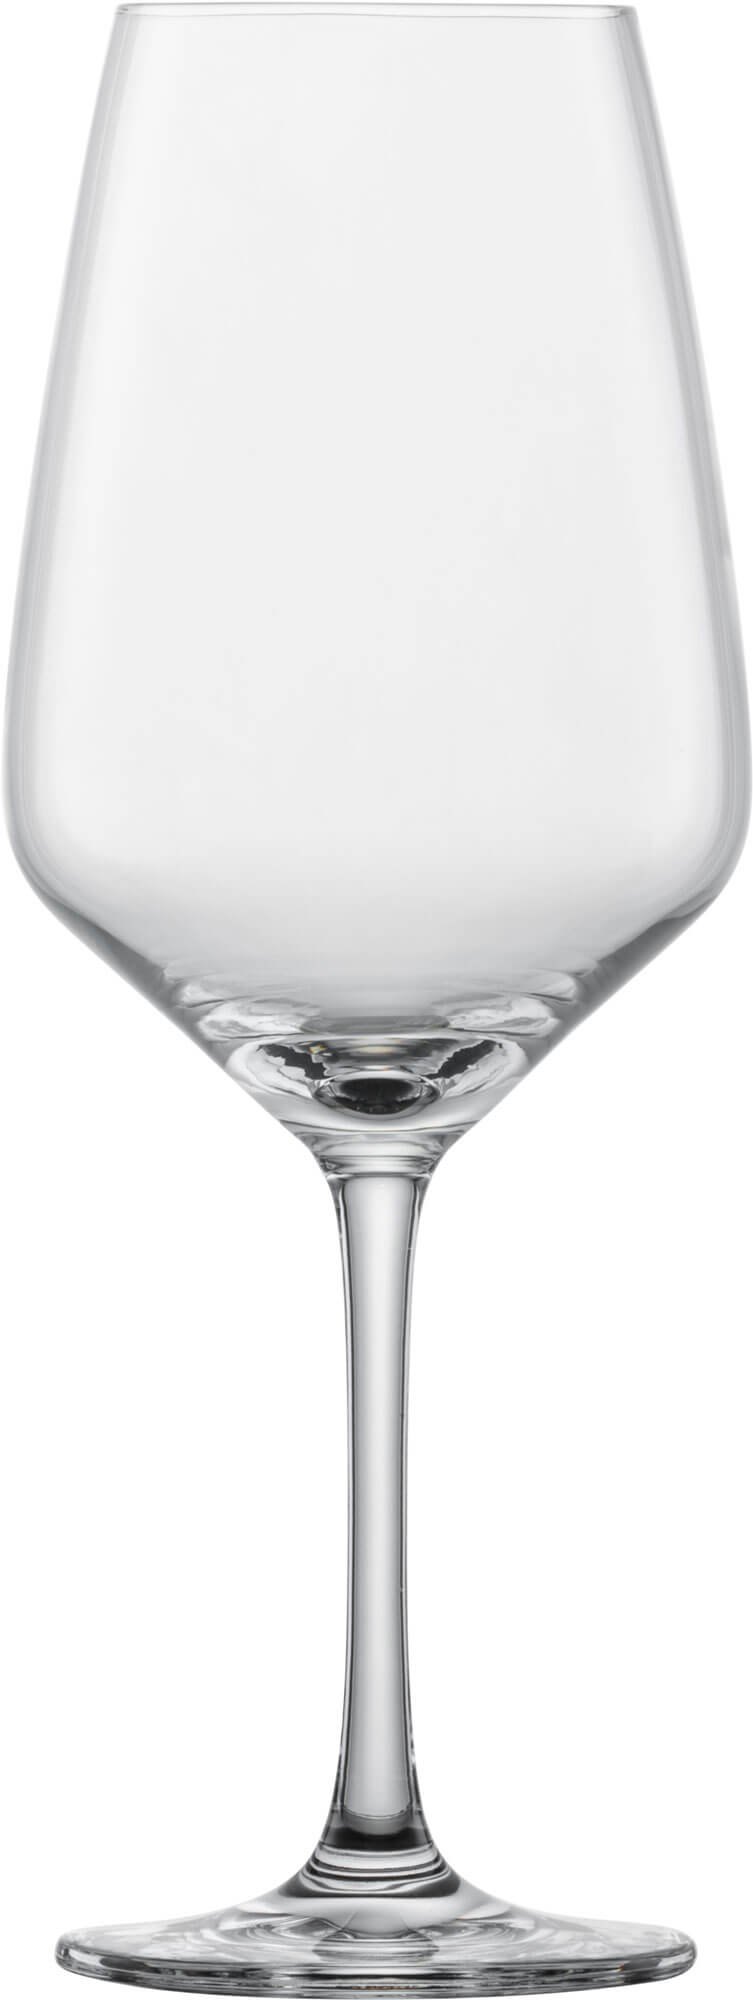 Rotweinglas Taste, Schott Zwiesel - 497ml, 0,25l FS (6 Stk.)